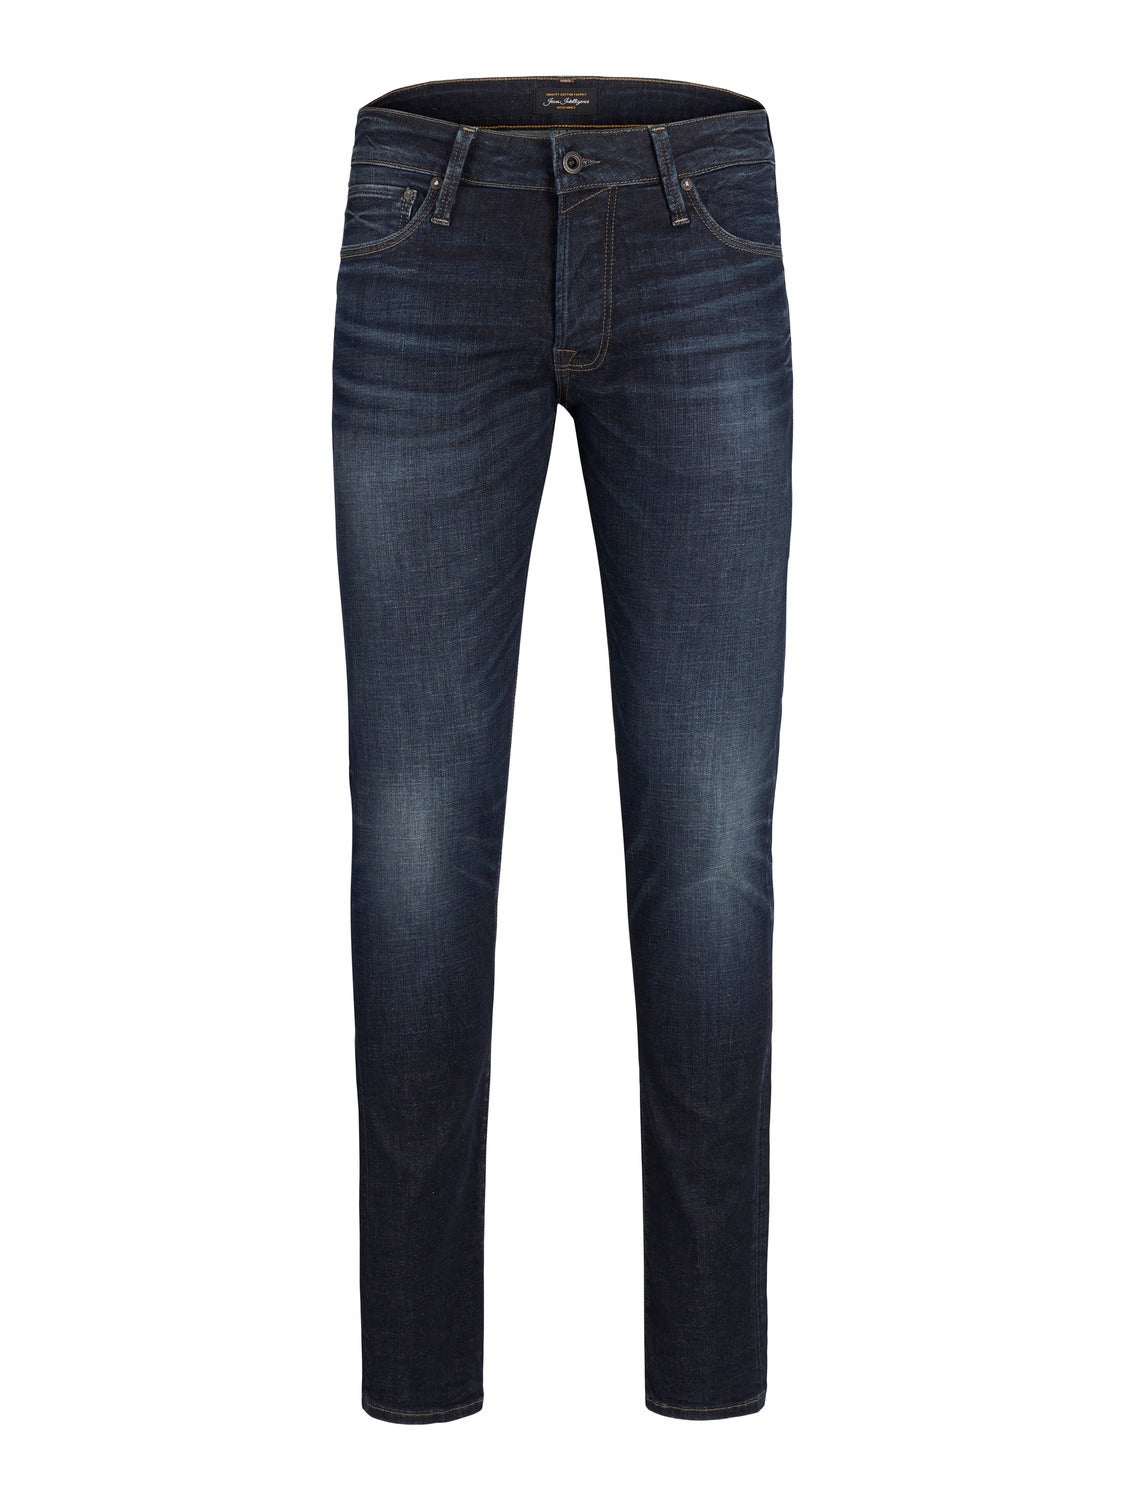 JJIMIKE JJORIGINAL SQ 270 Tapered fit jeans | Black | Jack & Jones®